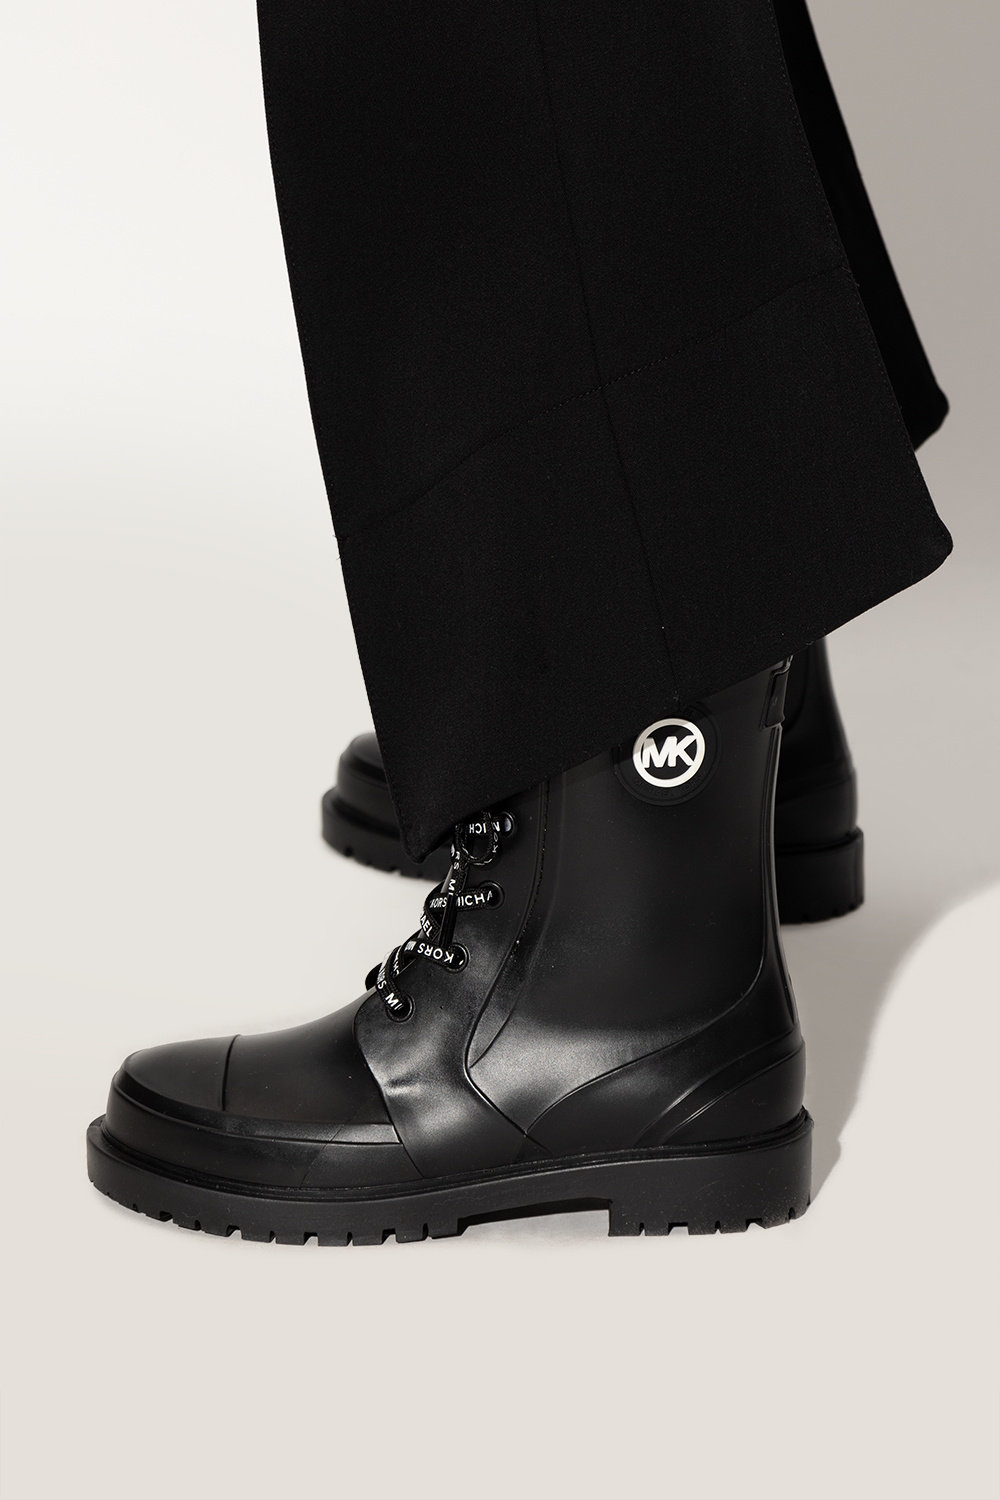 Michael Kors Women's Montaigne Lace-Up Cozy Lug Sole Rain Boots - Macy's